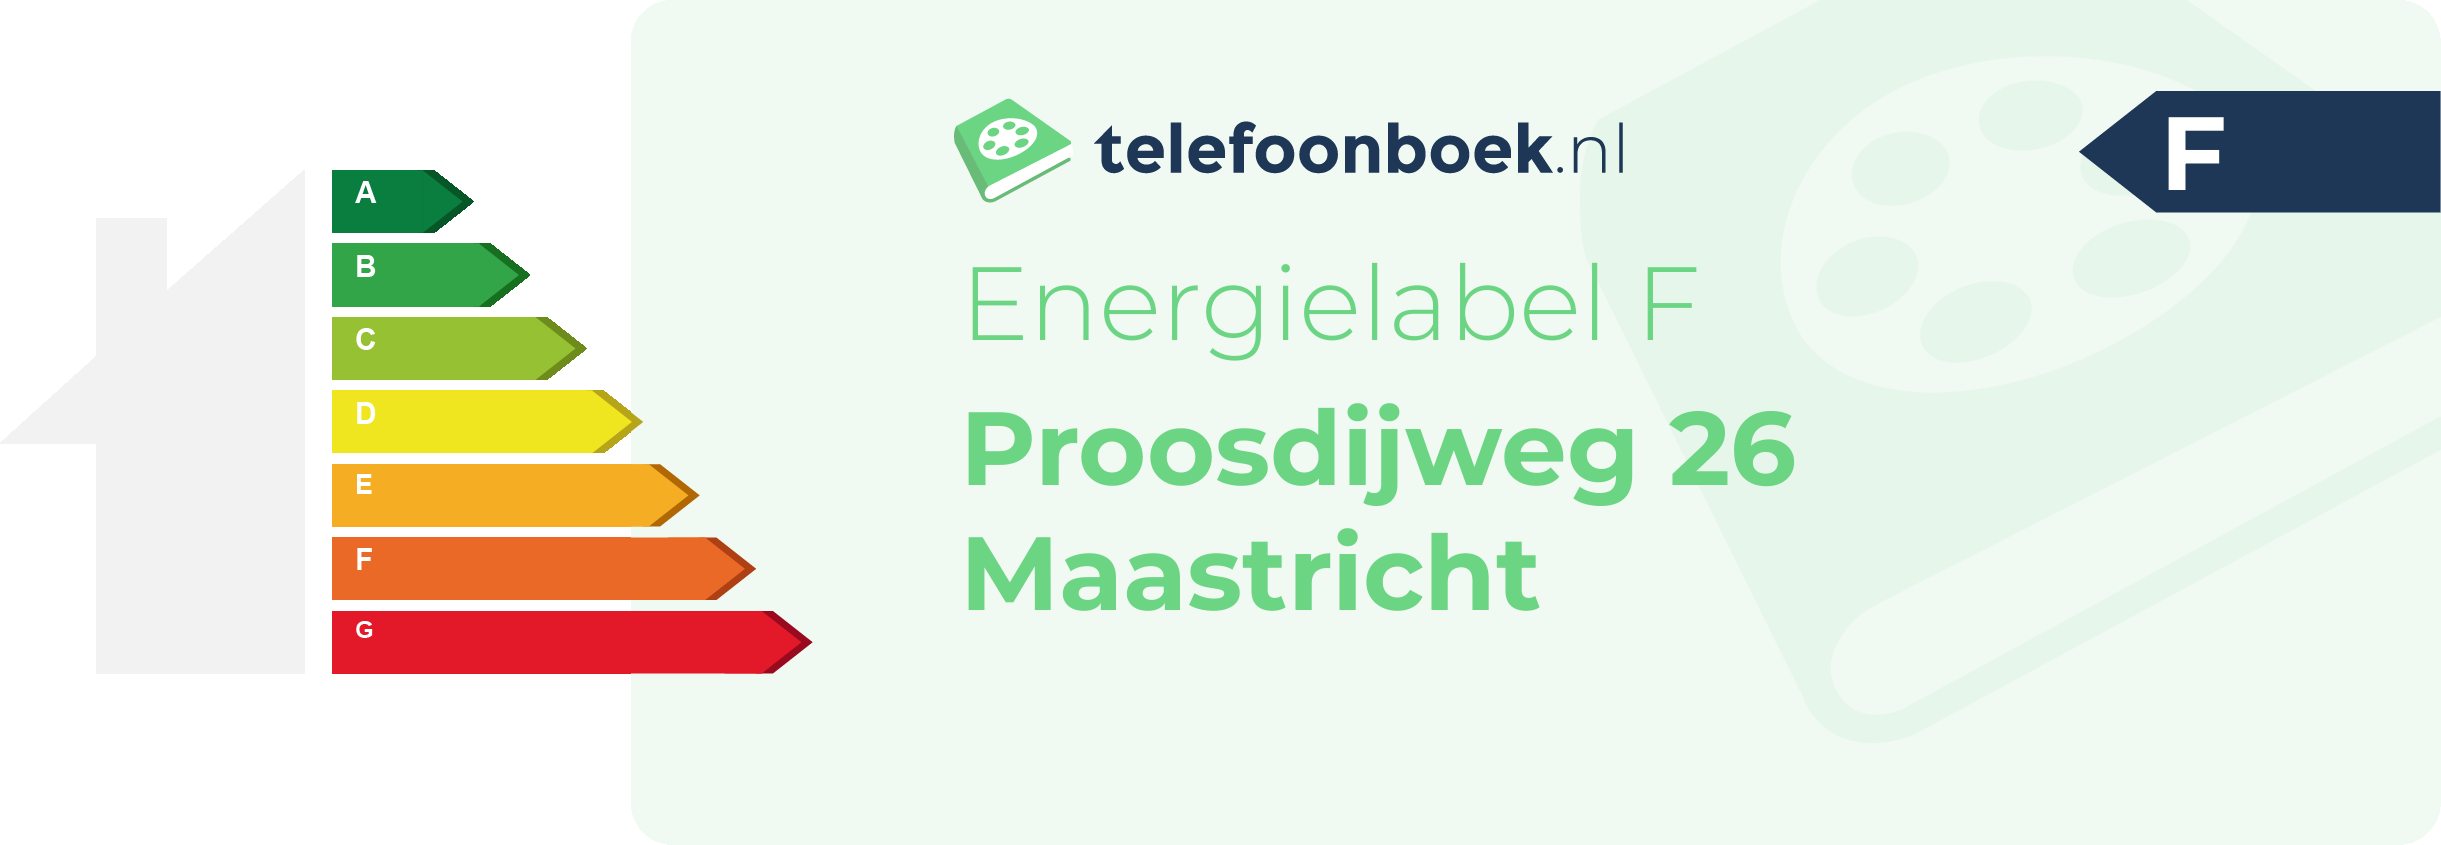 Energielabel Proosdijweg 26 Maastricht